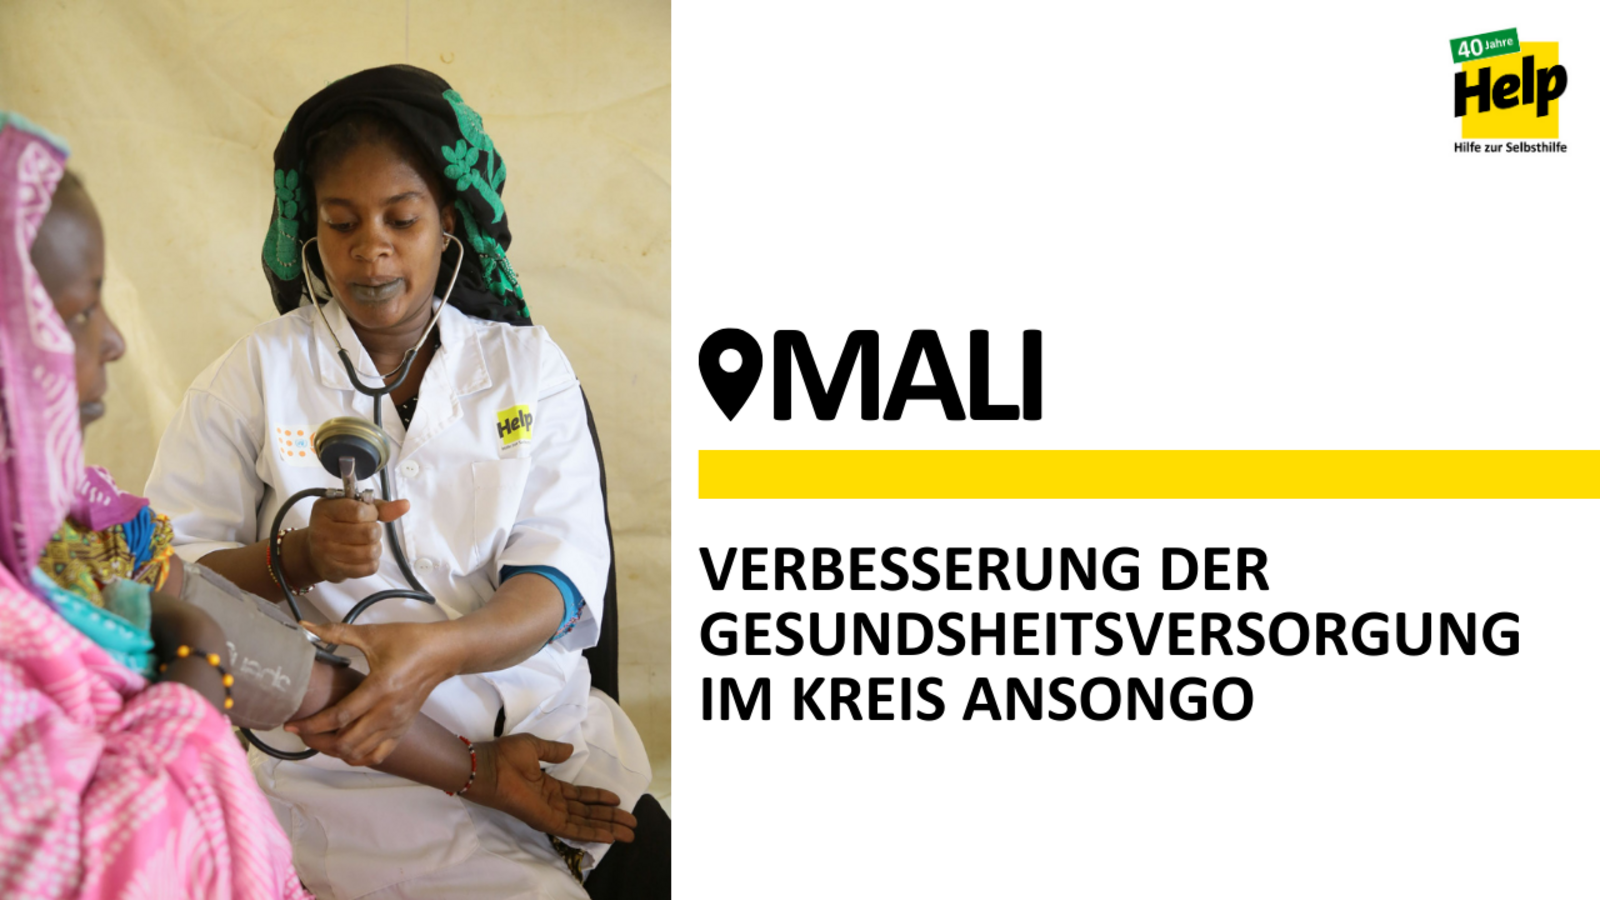 Spenden Mali: Help fördert die Gesundheit